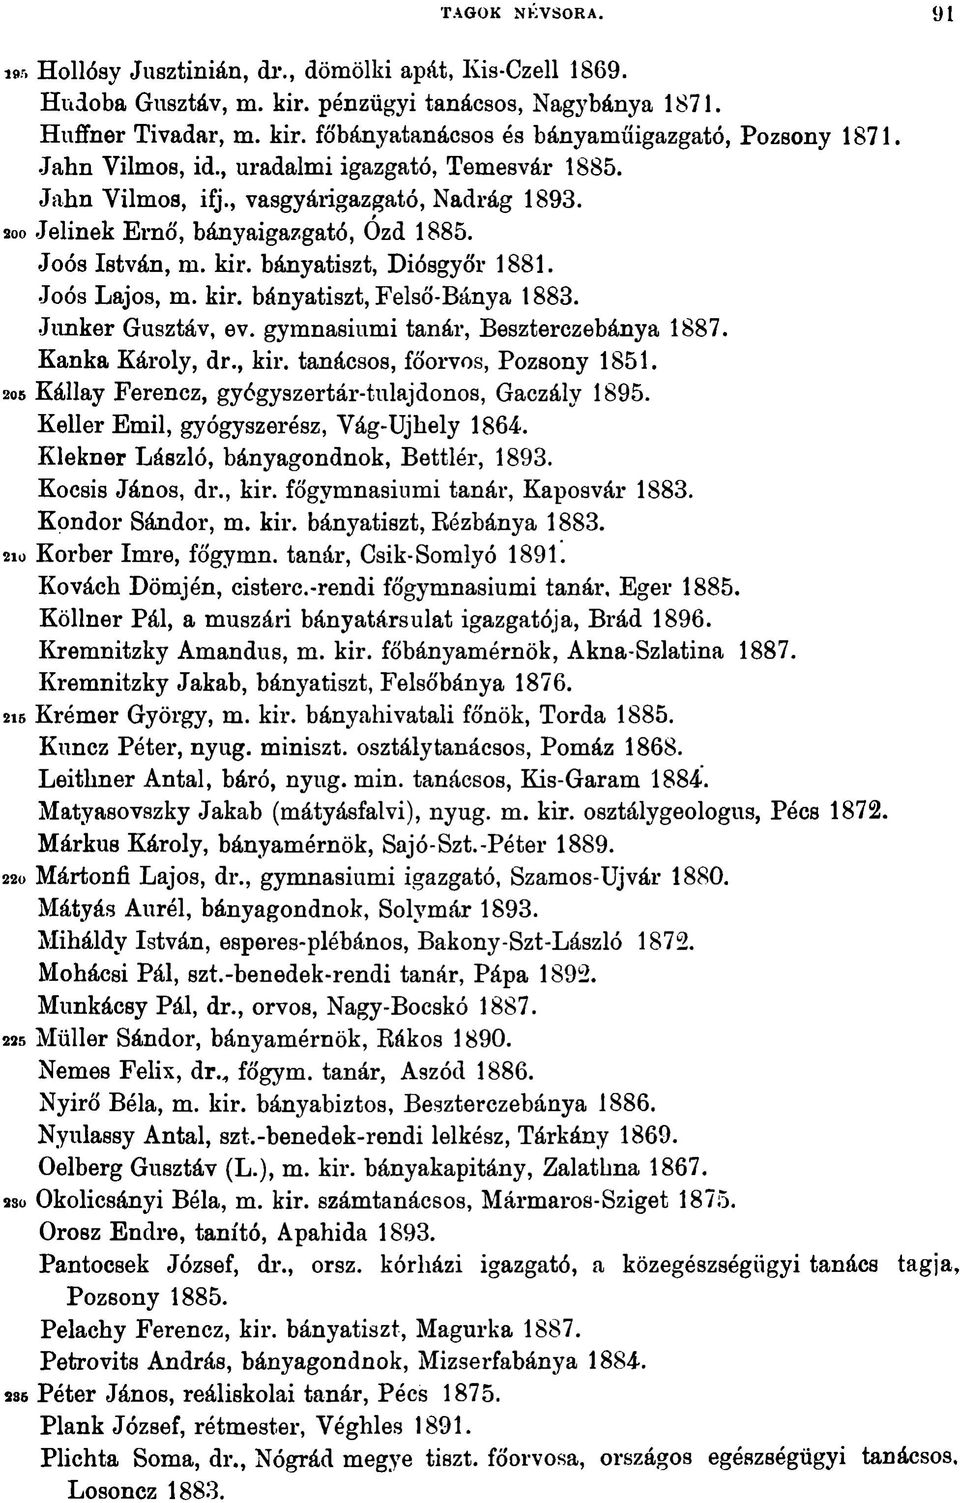 Joós Lajos, m. kir. bányatiszt, Felső-Bánya 1883. Junker Gusztáv, ev. gymnasiumi tanár, Beszterczebánya 1887. Kanka Károly, dr., kir. tanácsos, főorvos, Pozsony 1851.